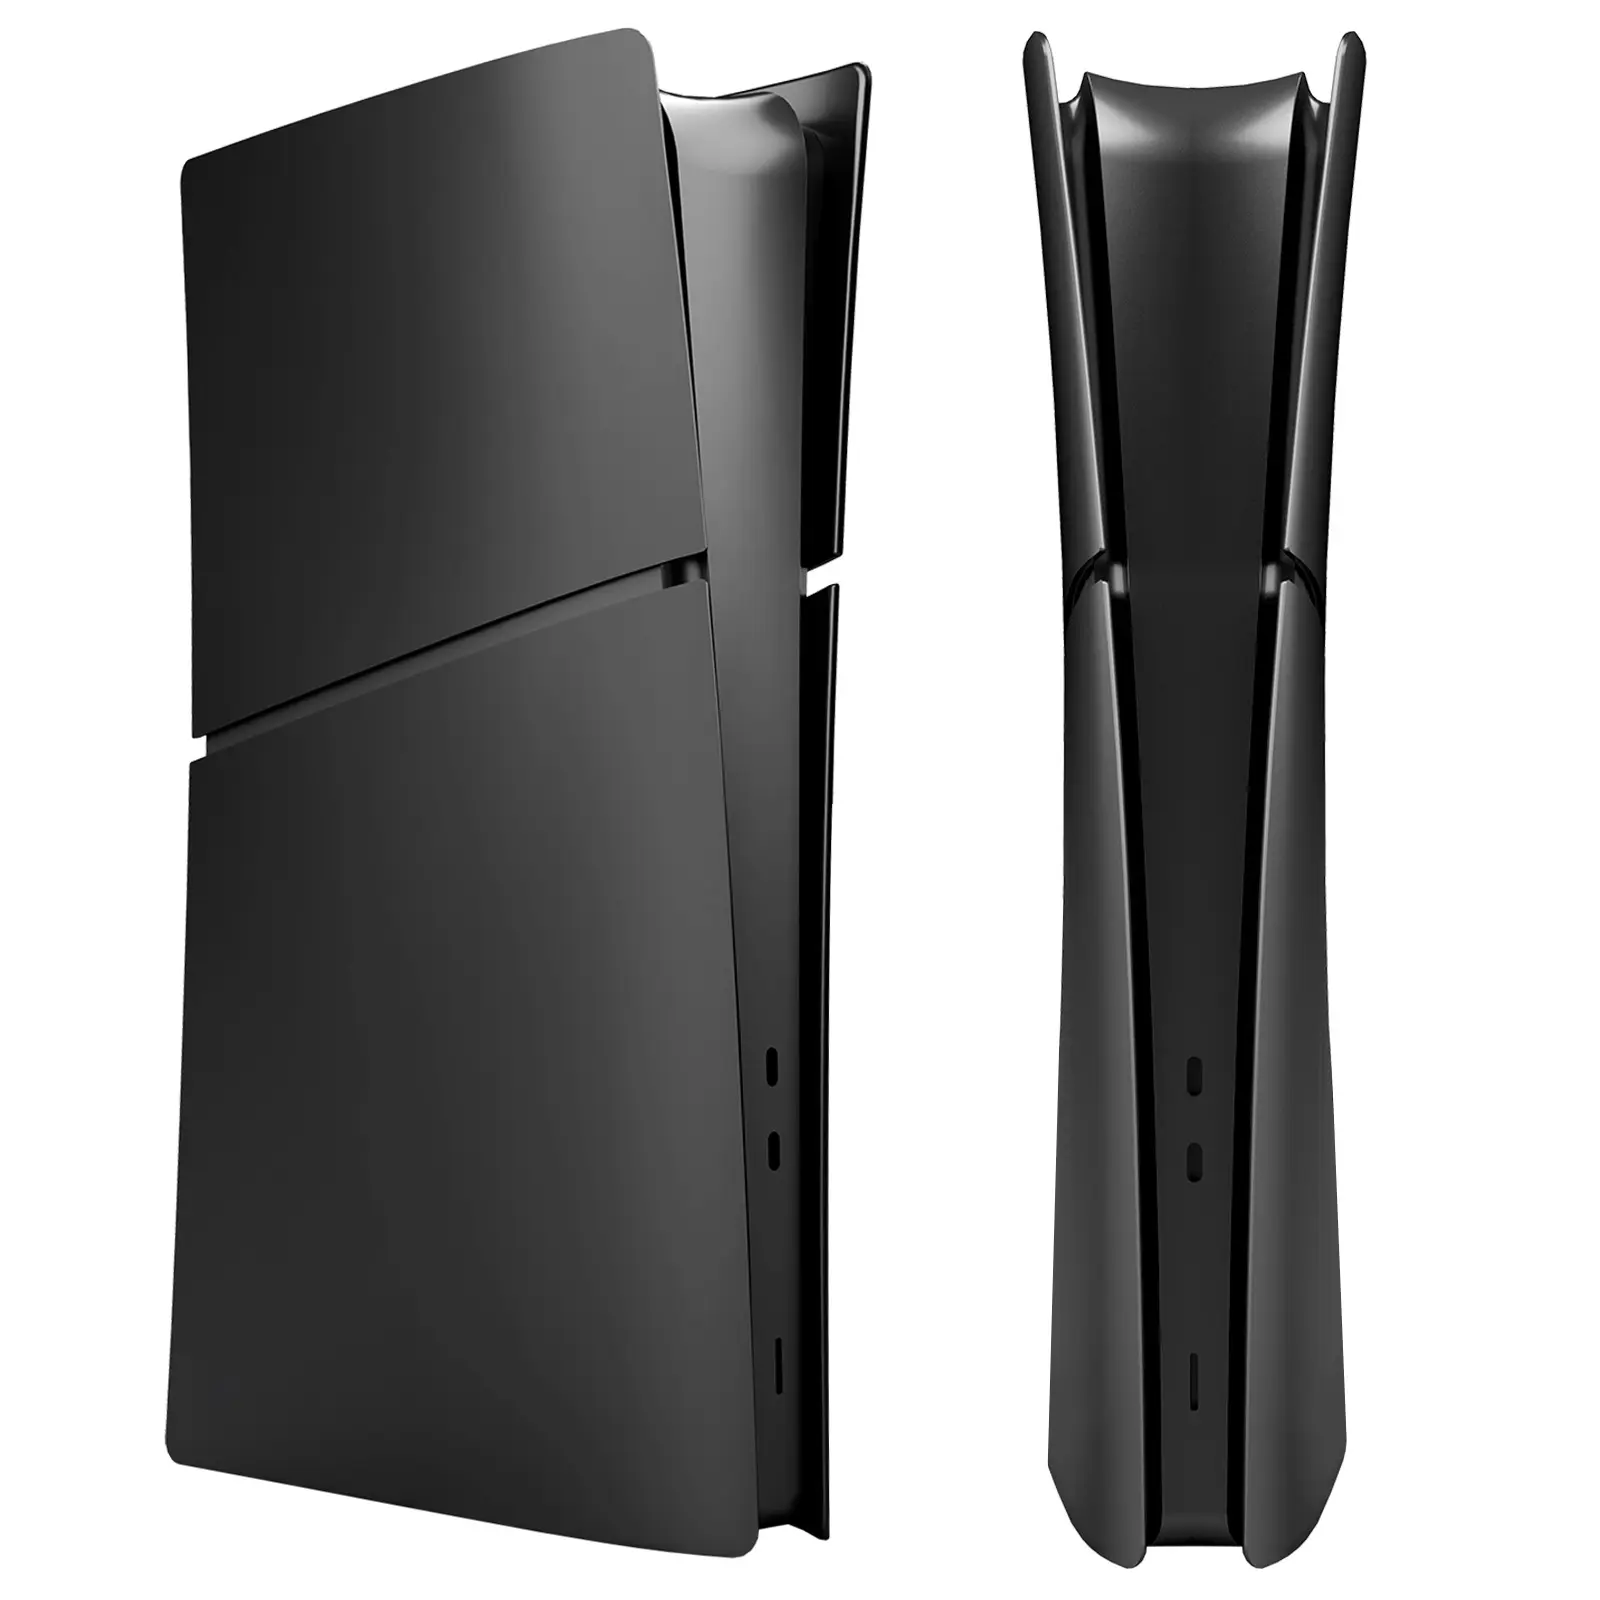 PS5スリム用ディスクデジタルフェイスプレートフェイスコンソールプレートカバーケースハウジングシェル